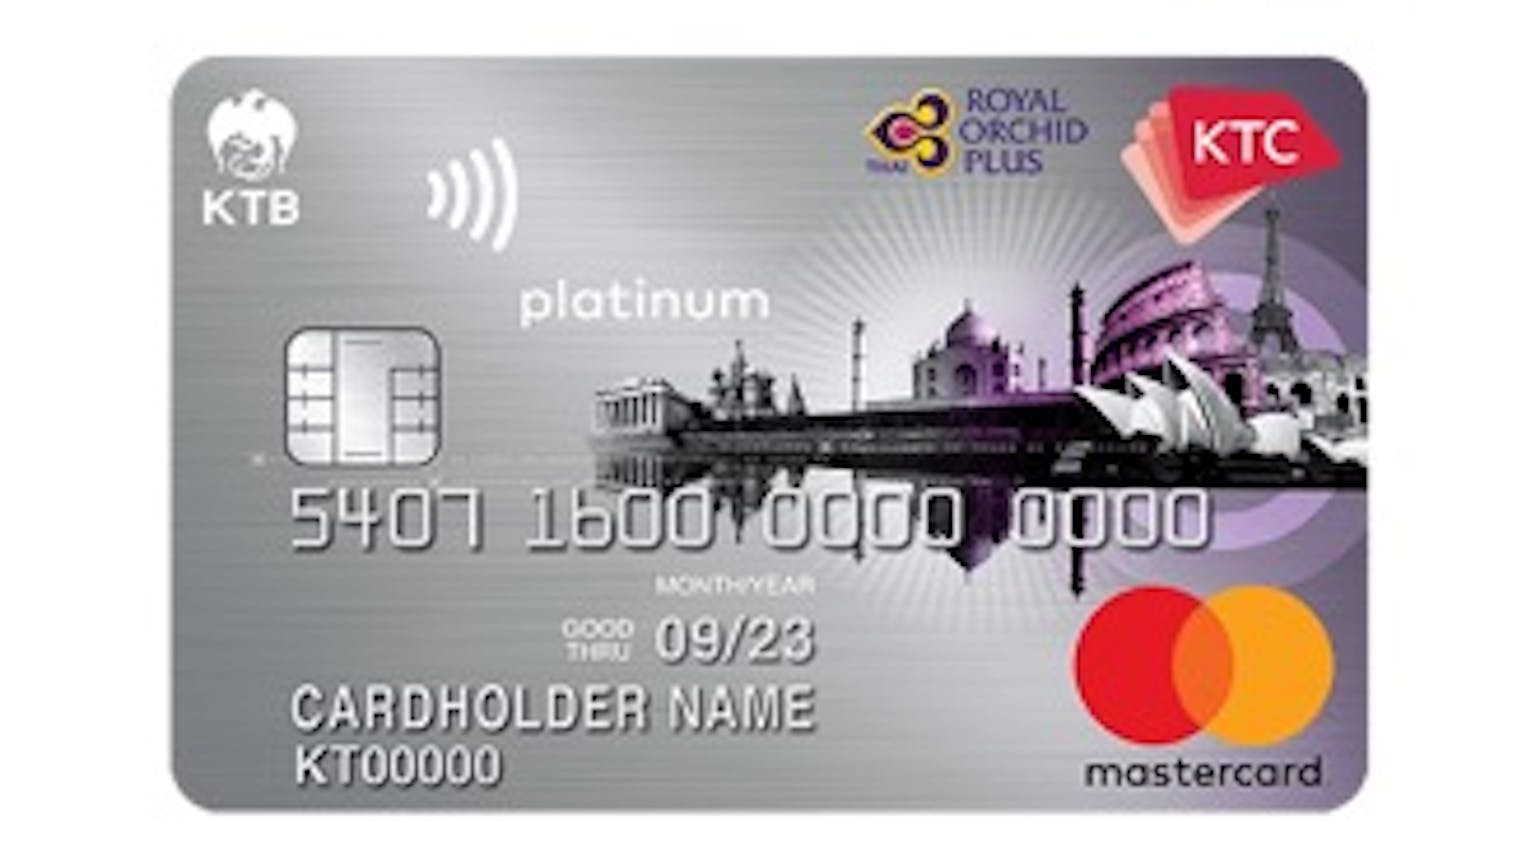 บัตรเครดิต เคทีซี รอยัล ออร์คิด พลัส แพลทินั่ม มาสเตอร์การ์ด | บัตรกรุงไทย  | Moneyduck Thailand